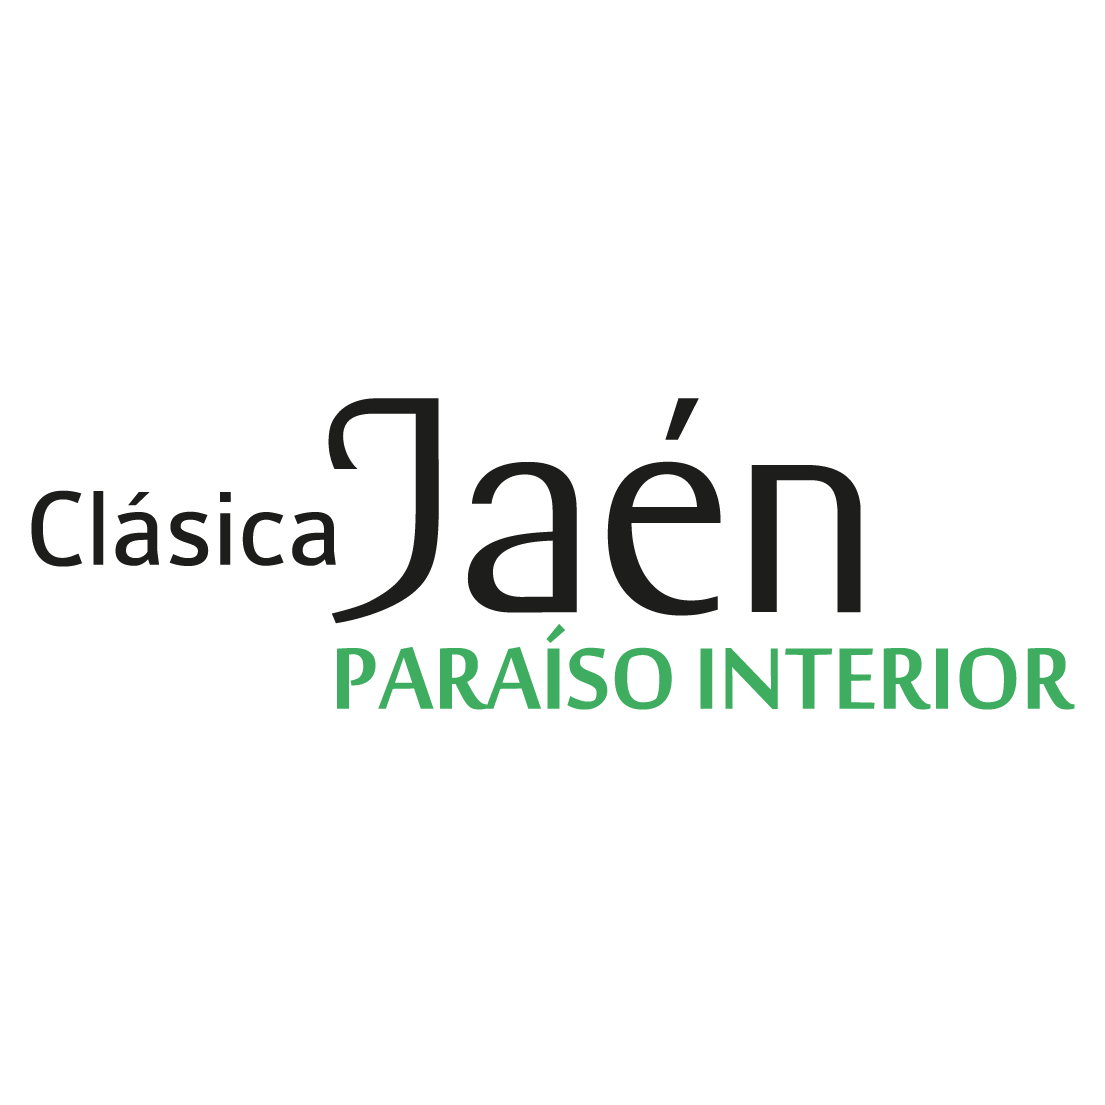 Liste des partants de la Jaén Paraiso Interior, course UCI au calendrier Europe Tour.